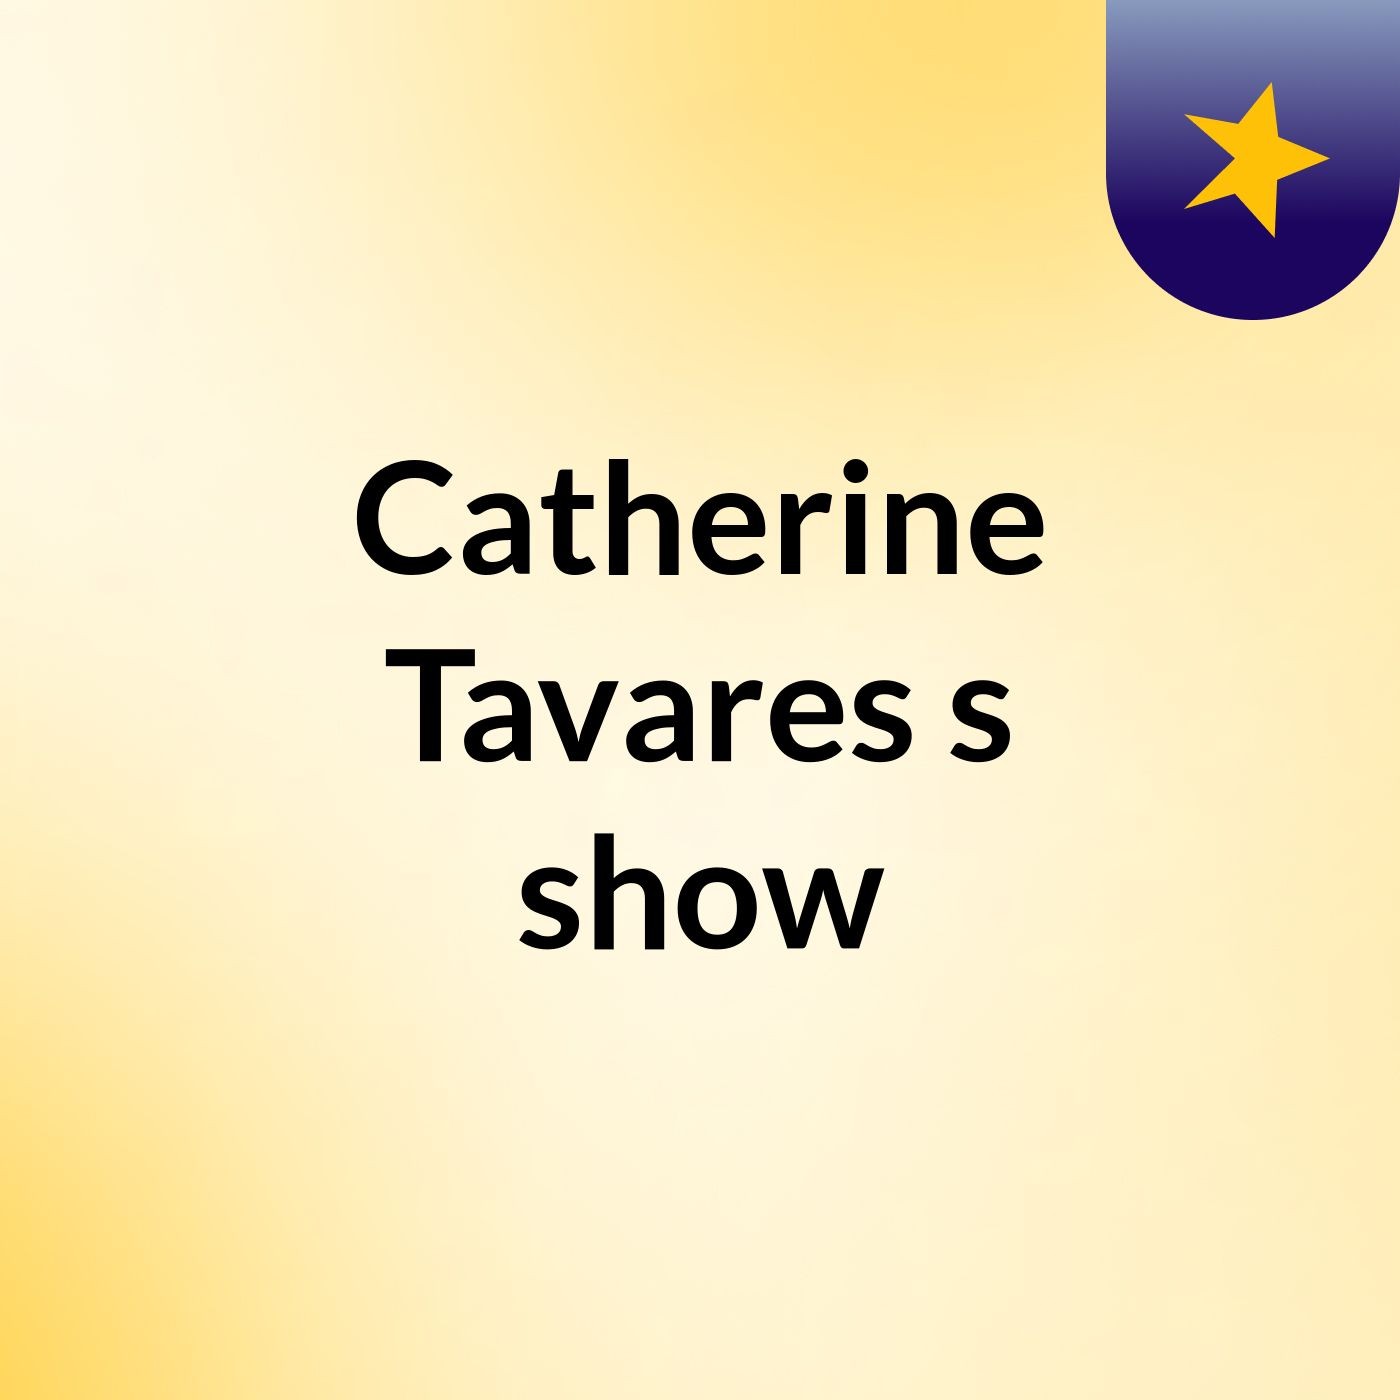 Catherine Tavares's show